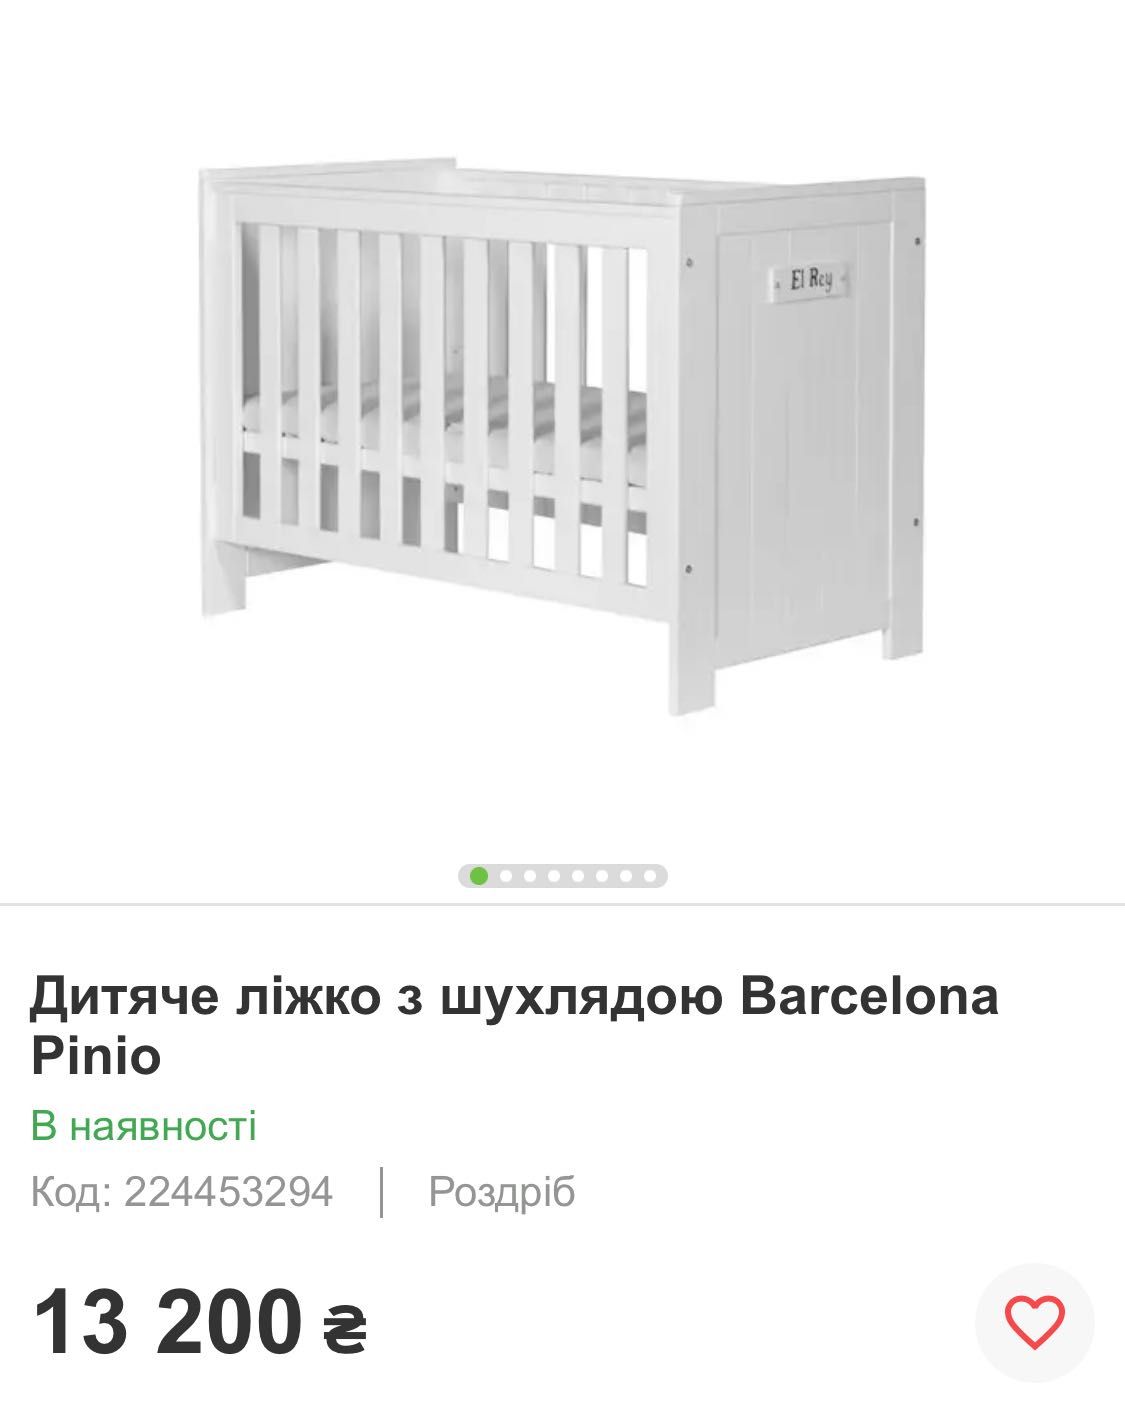 Дитяче ліжко Pinio Barcelona